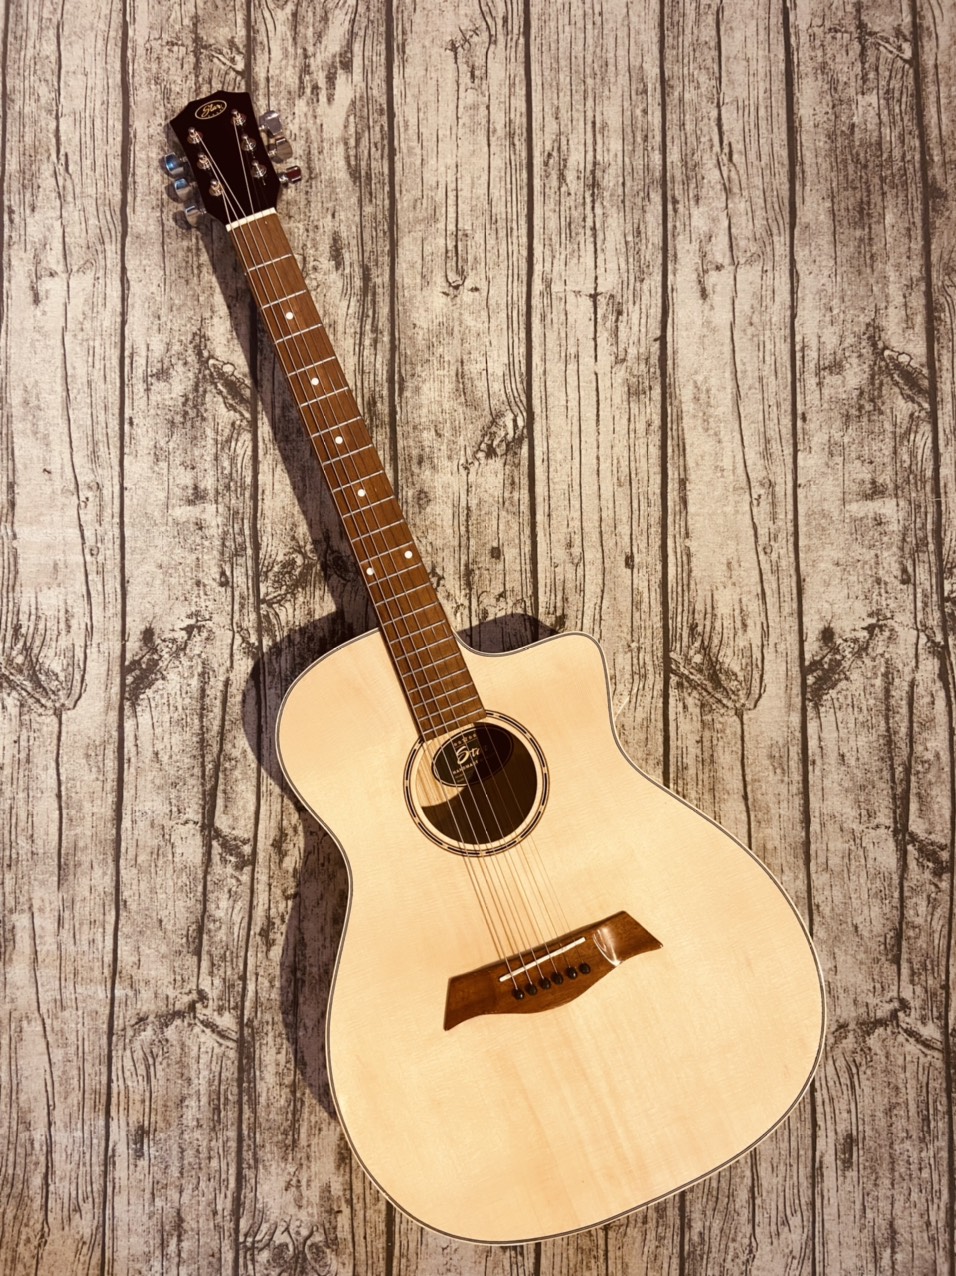 Đàn guitar acoustic giá rẻ có ty chỉnh cần Việt Nam mặt gỗ thông, dễ sử dụng cho người mới...